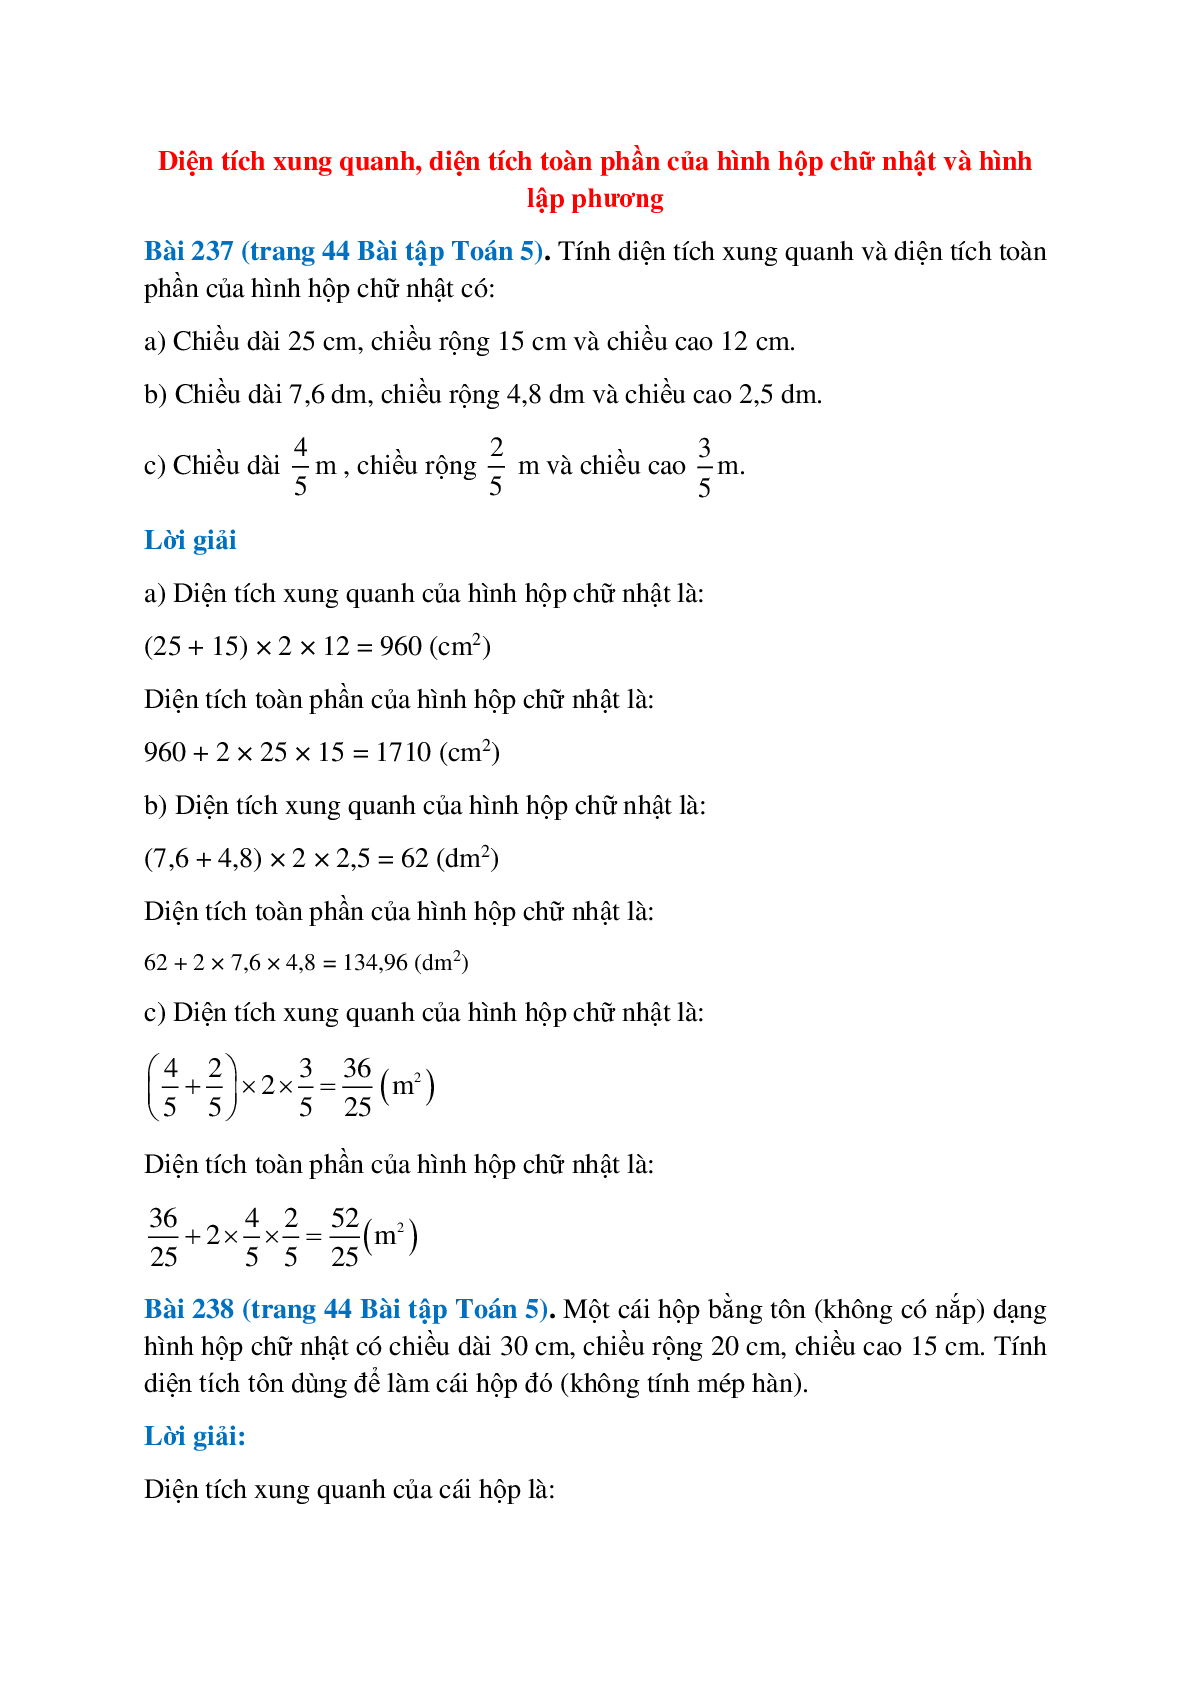 SBT Toán lớp 5 trang 44, 45, 46 Diện tích xung quanh, diện tích toàn phần của hình hộp chữ nhật và hình lập phương (trang 1)